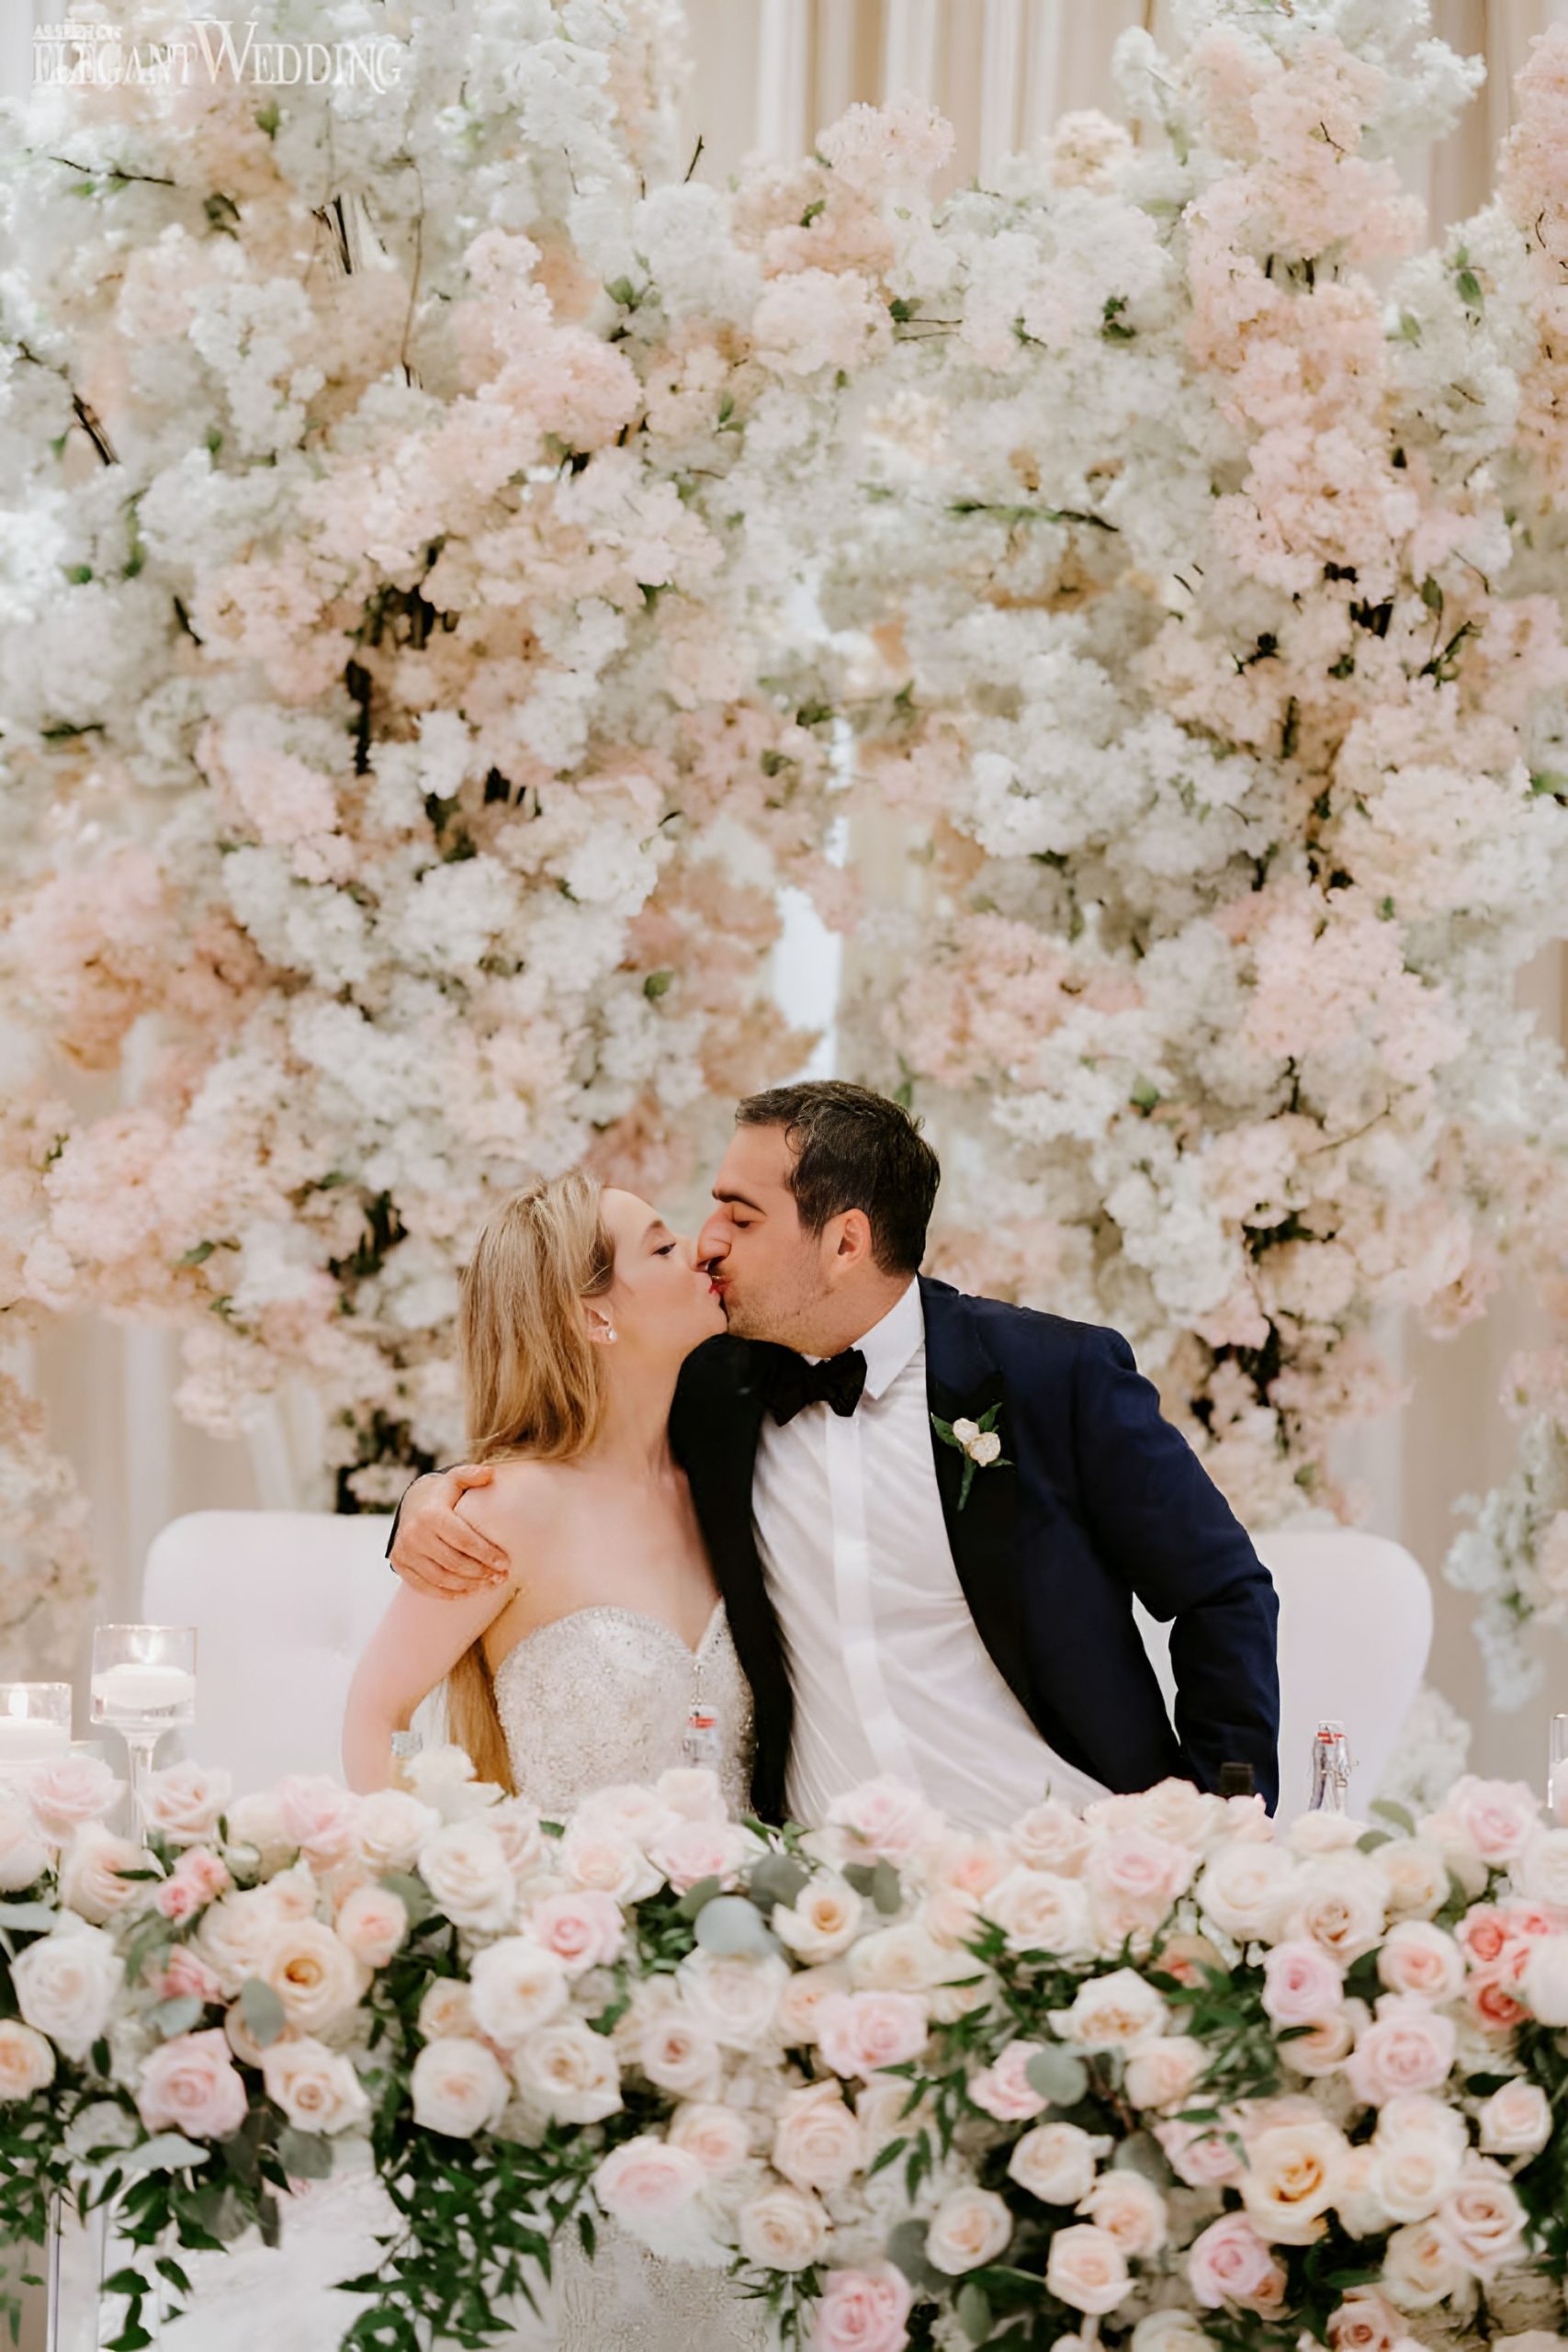 Sweetheart Table Flowers: Wedding